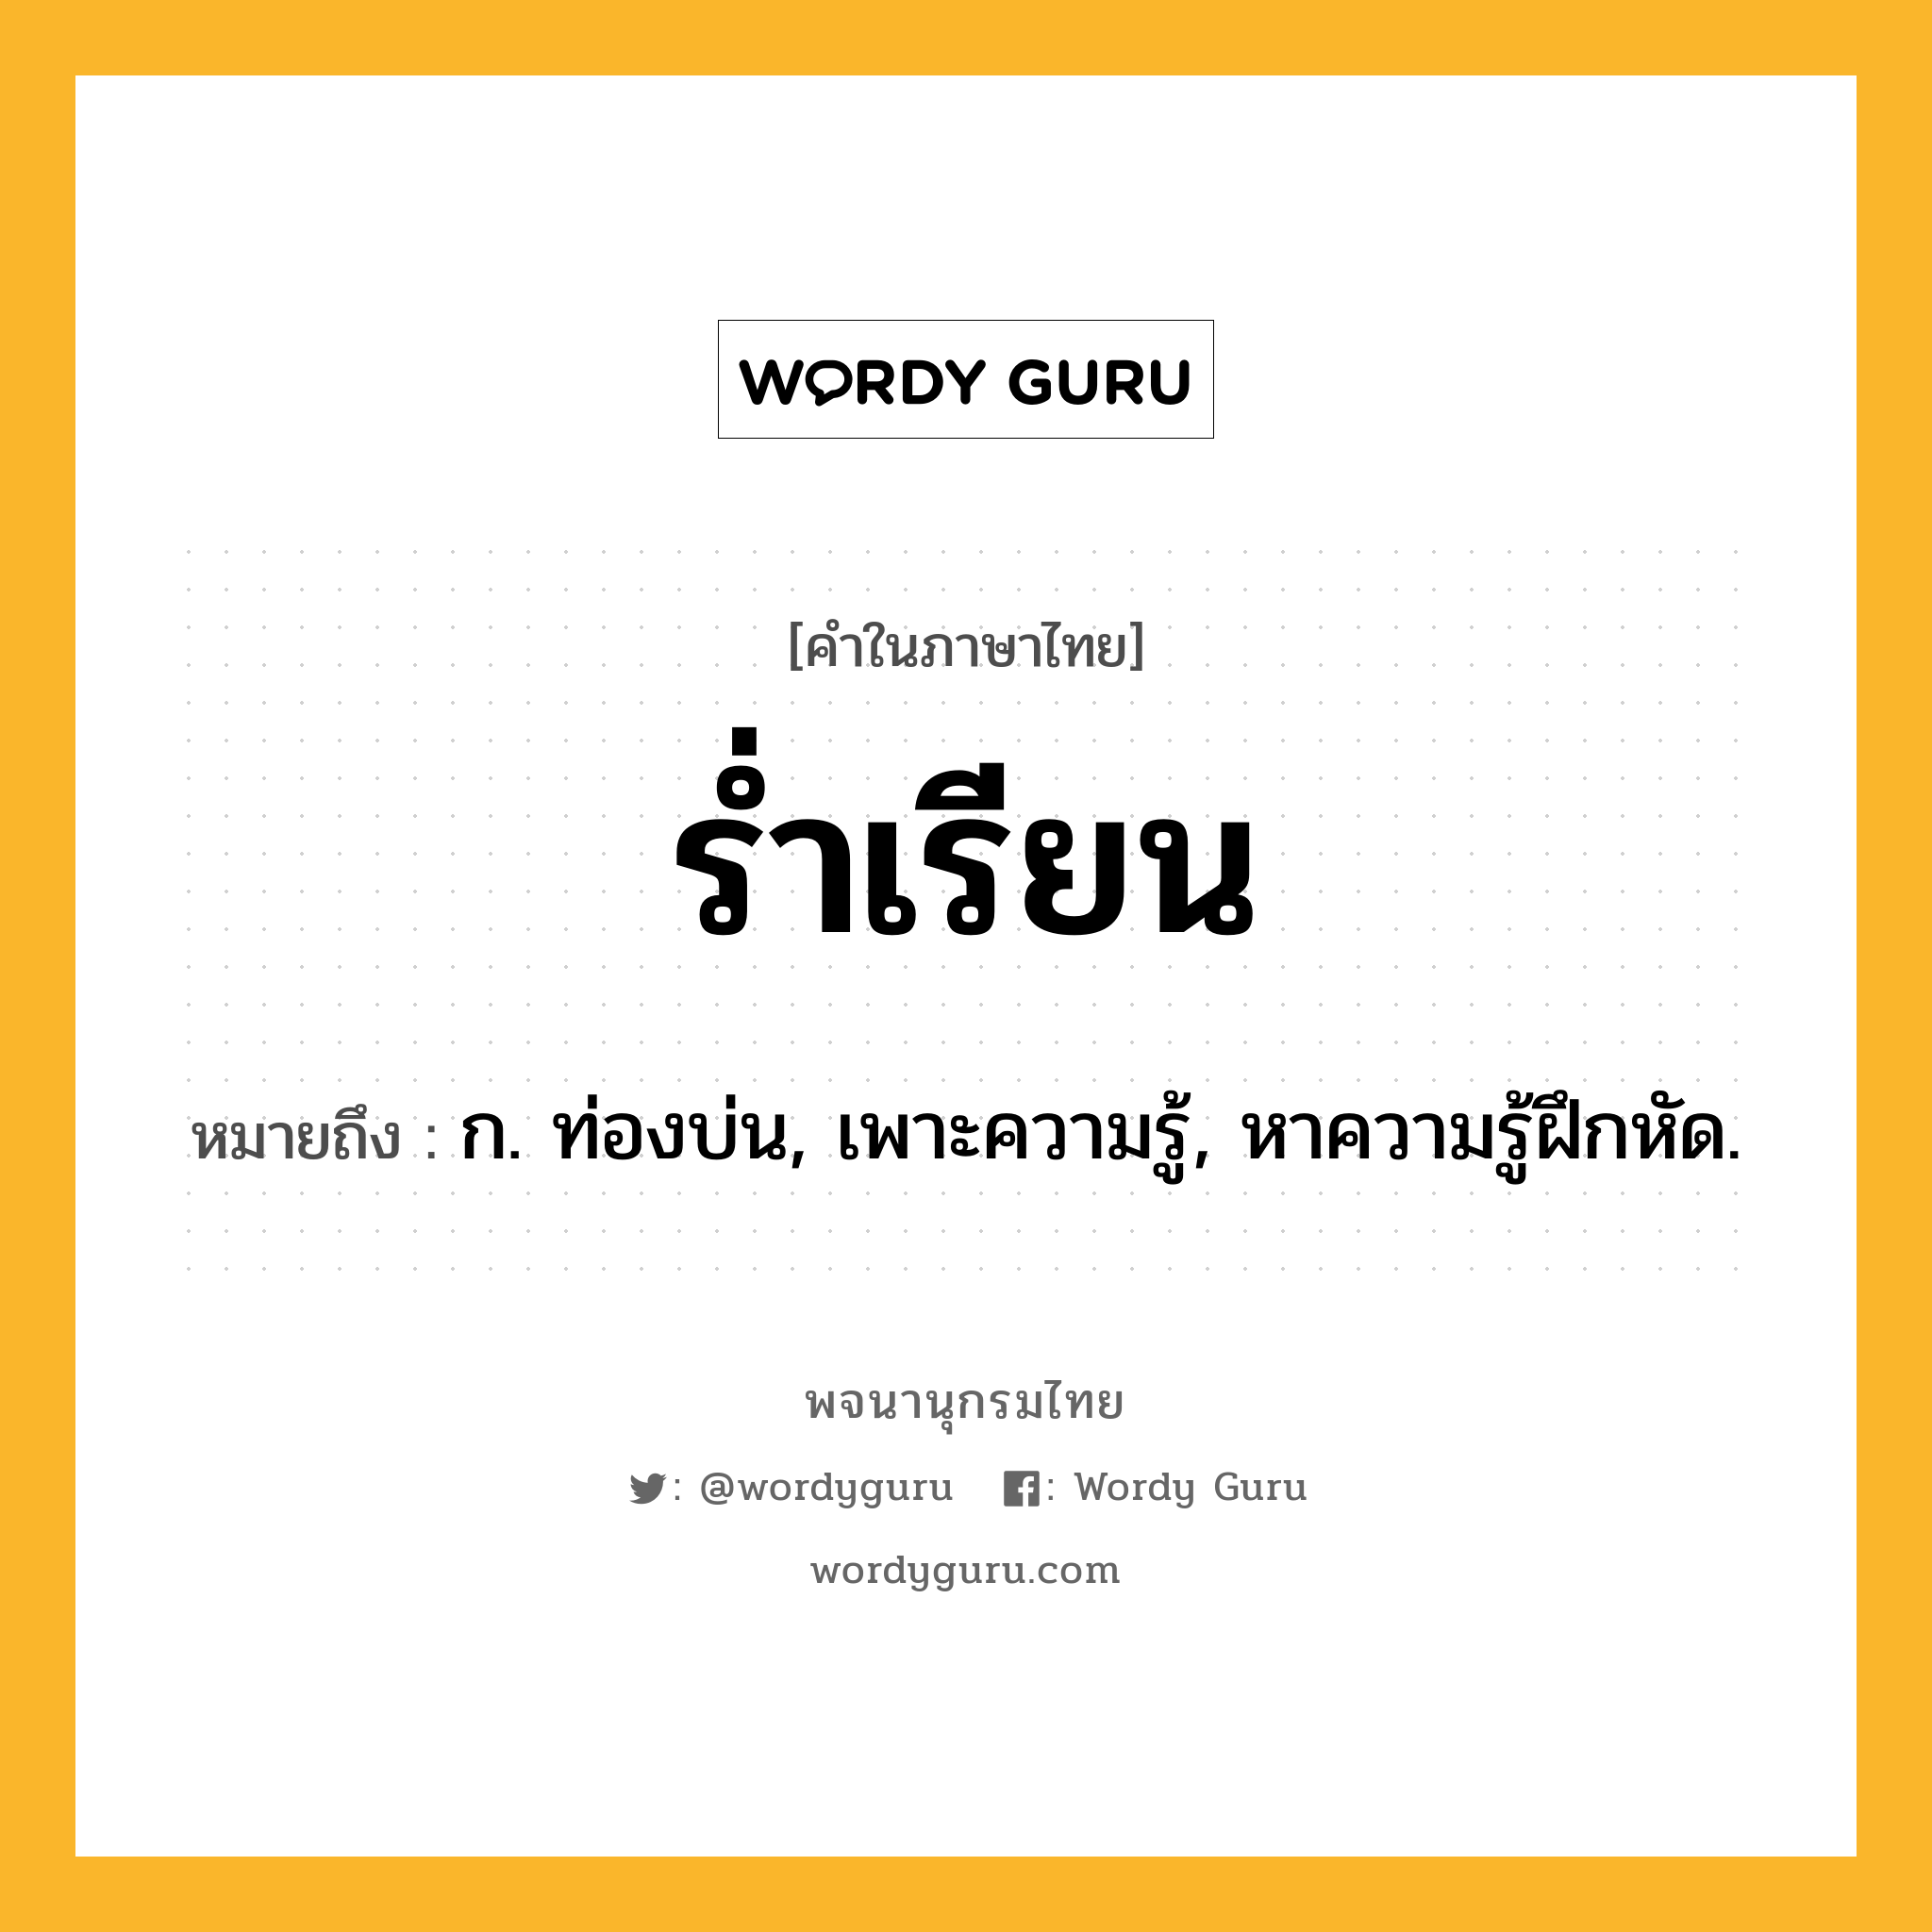 ร่ำเรียน หมายถึงอะไร?, คำในภาษาไทย ร่ำเรียน หมายถึง ก. ท่องบ่น, เพาะความรู้, หาความรู้ฝึกหัด.